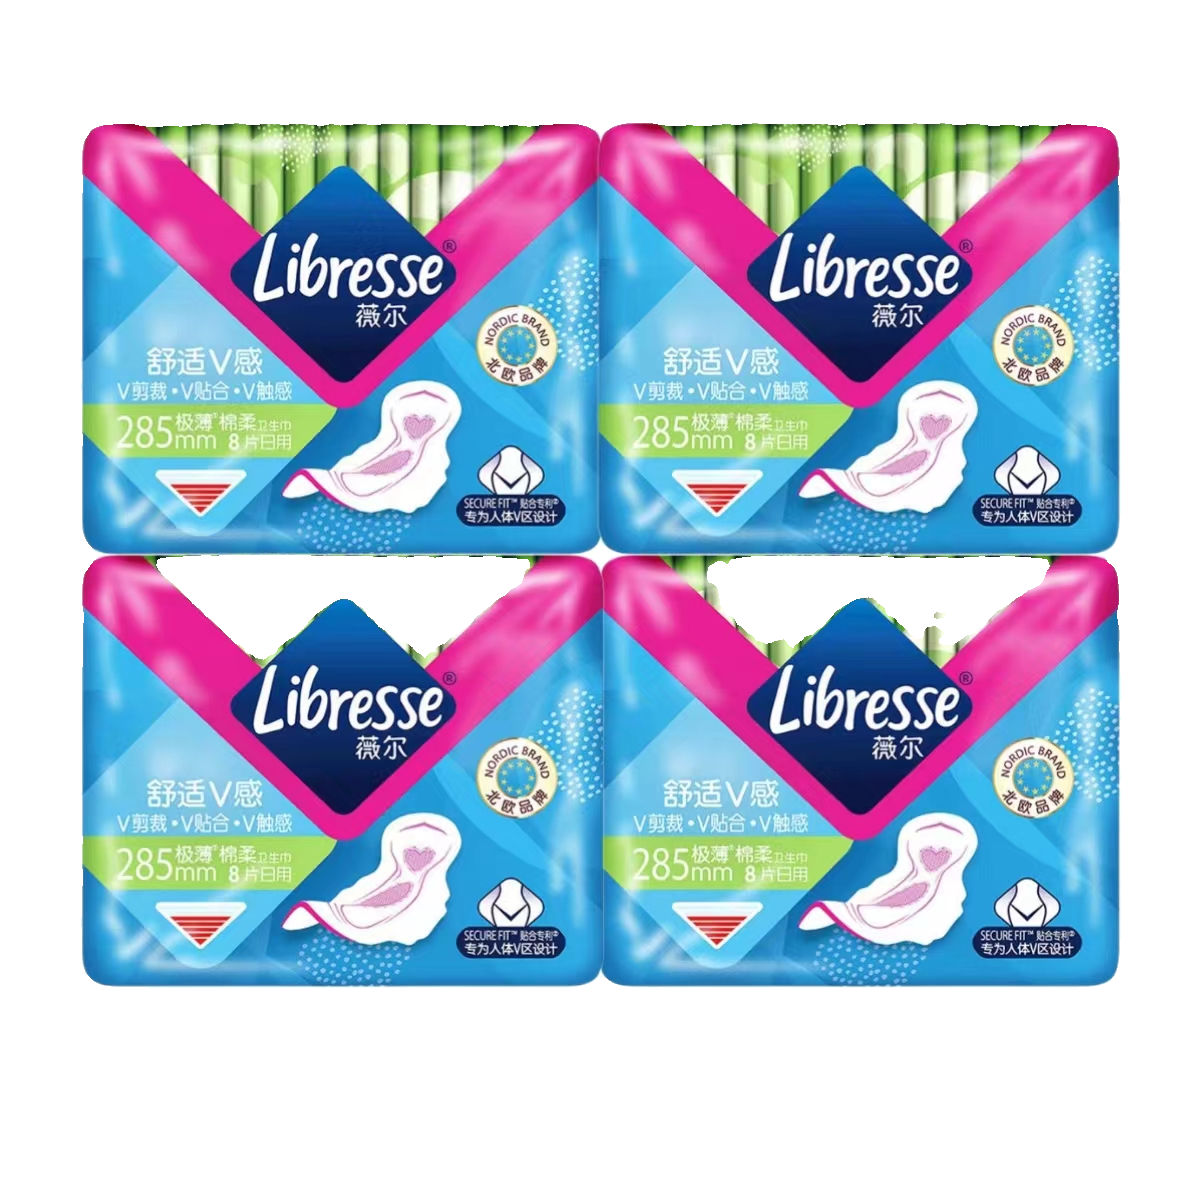 薇尔 Libresse 棉柔极薄卫生巾4包32片 15.1元